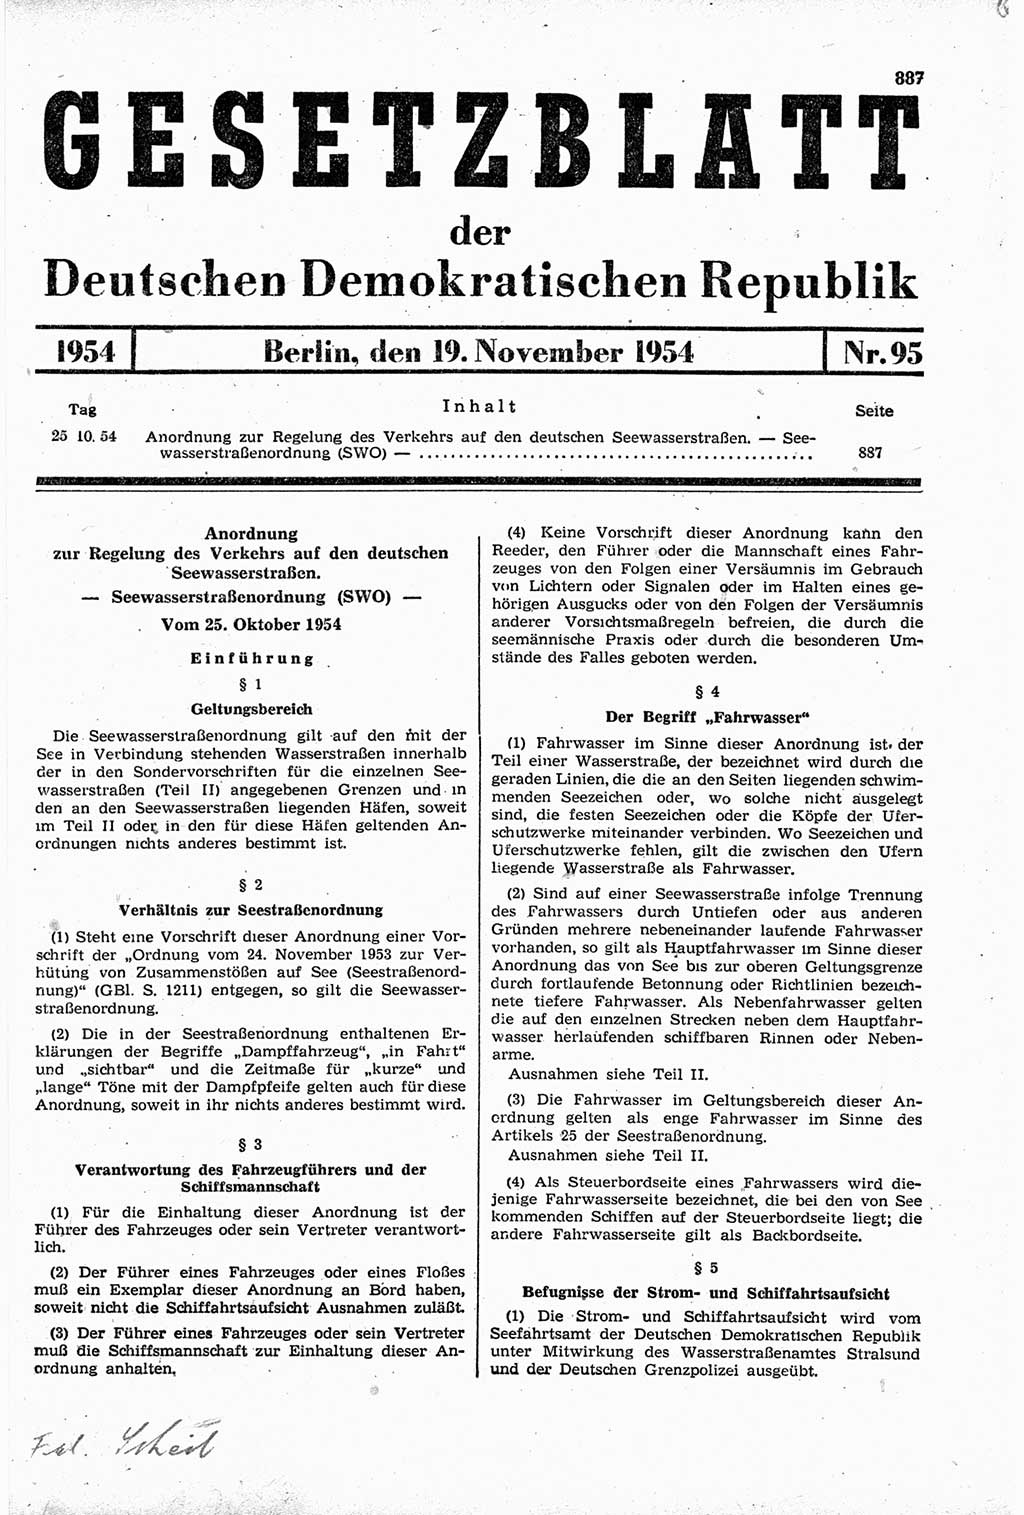 Gesetzblatt (GBl.) der Deutschen Demokratischen Republik (DDR) 1954, Seite 887 (GBl. DDR 1954, S. 887)